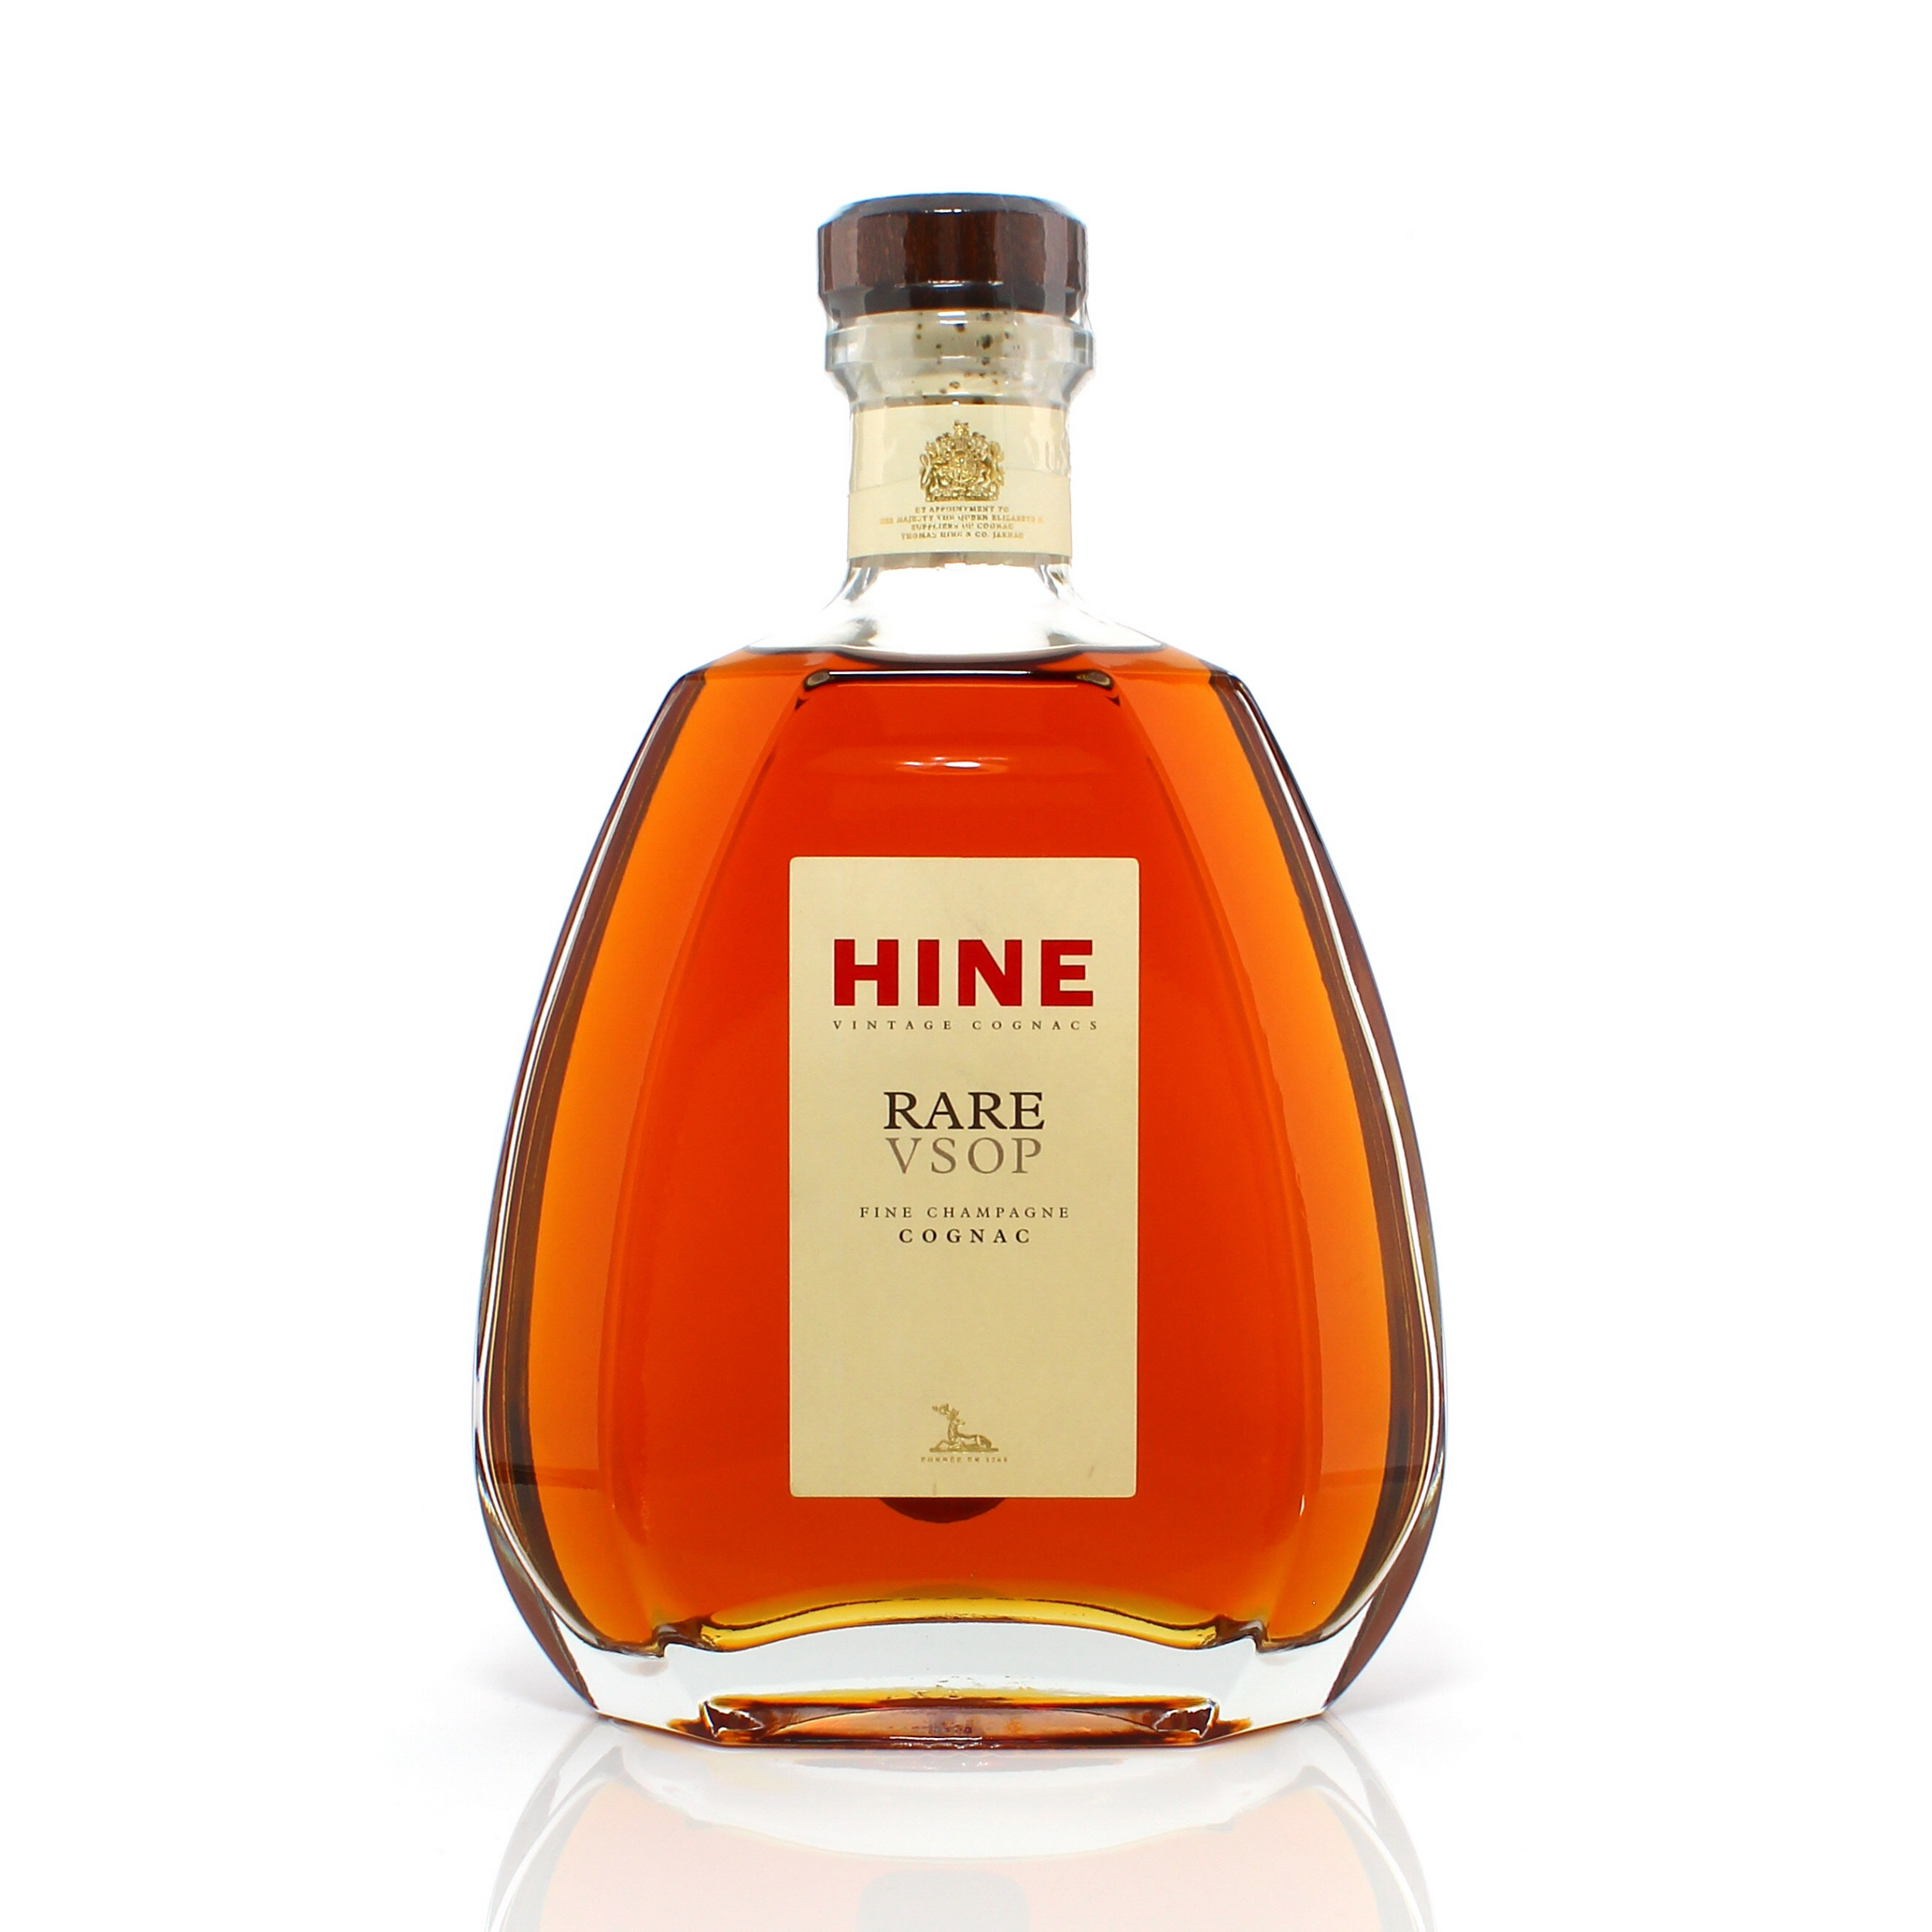 Hine Rare VSOP Auction A10909 | The Whisky Shop Auctions